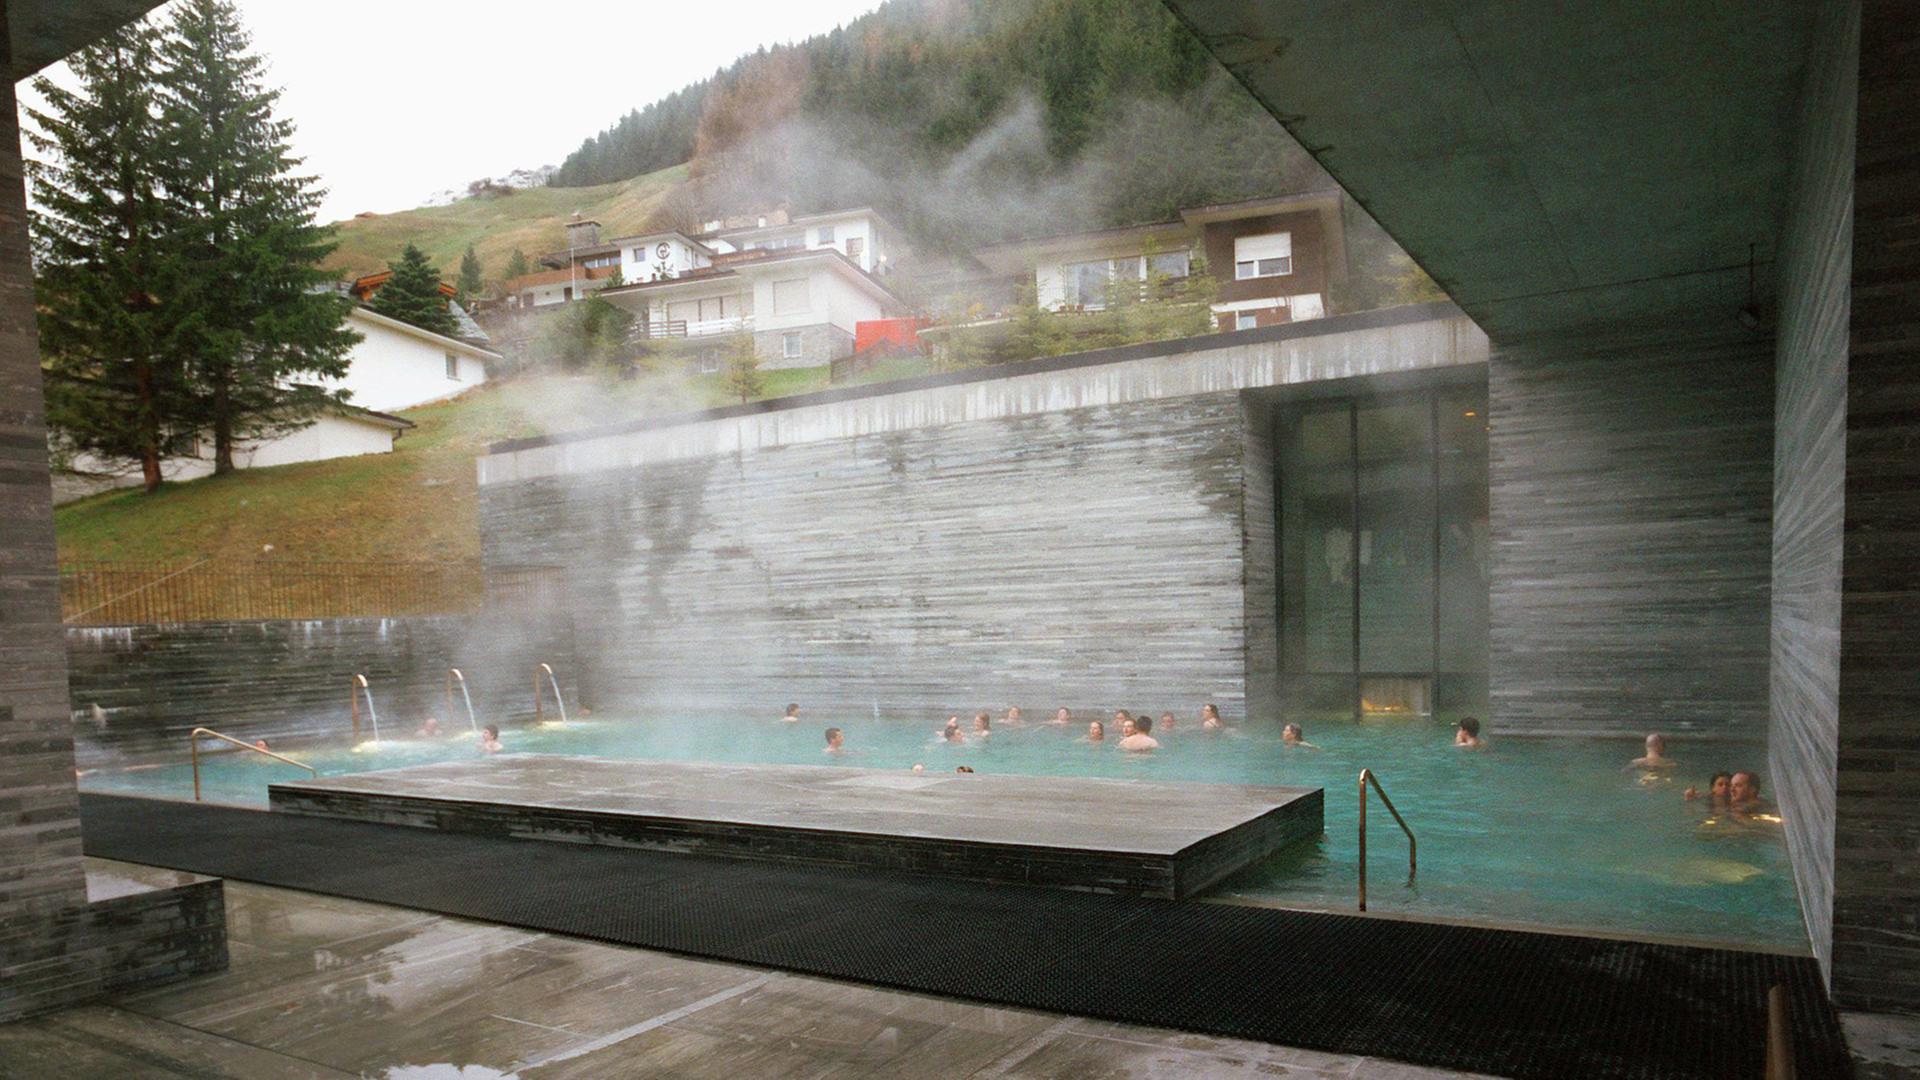 Außenaufnahme von der Felsentherme in Vals in Graubünden, realisiert von dem Schweizer Architekten Peter Zumthor. Das Thermalbad aus massivem einheimischen Quarzit wurde über der einzigen Therme Graubündens erbaut und im Dezember 1996 eröffnet.